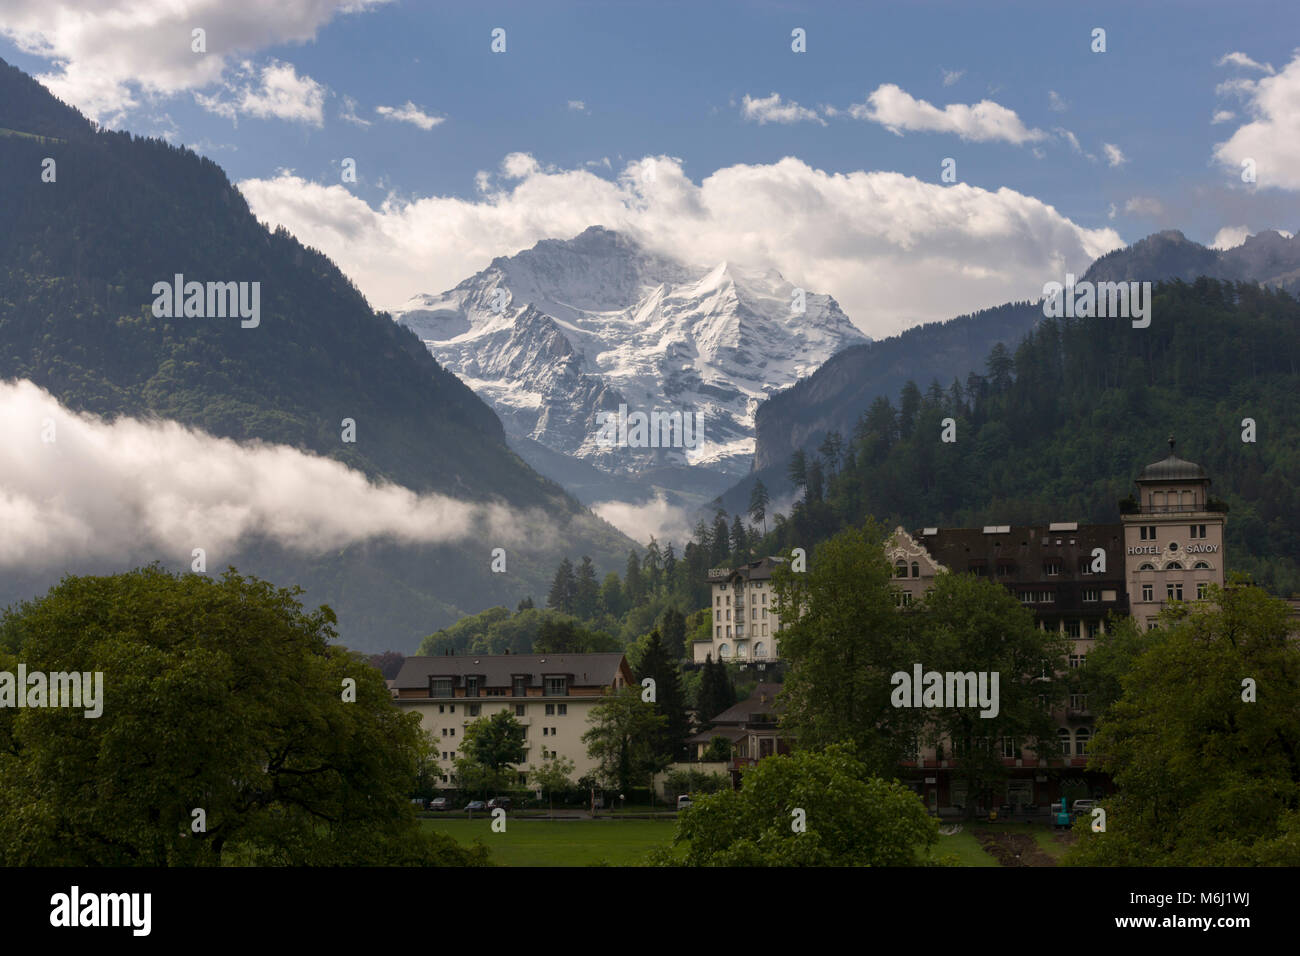 Couvert de neige des Alpes suisses Jungfrau Interlaken Bern Suisse été fond de ciel bleu nuages bas en vallée Linder Grand Hotel Beau Rivage resort Banque D'Images